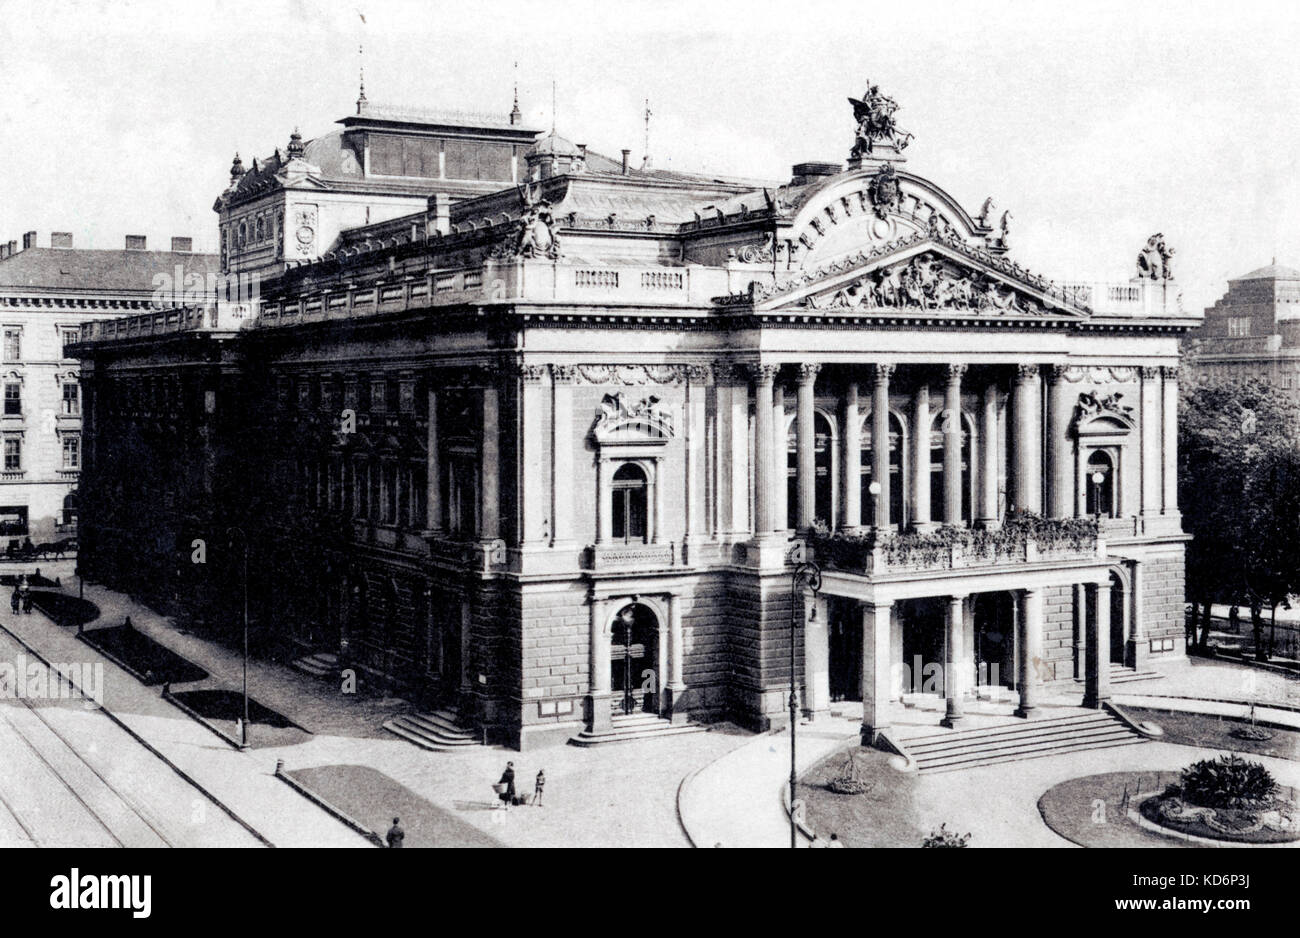 Tschechische Nationaltheater in Brno, wo "Jenufa" von Janacek durchgeführt wurde zum ersten Mal (21. Januar 1904). Janacek Verbindung. Stockfoto